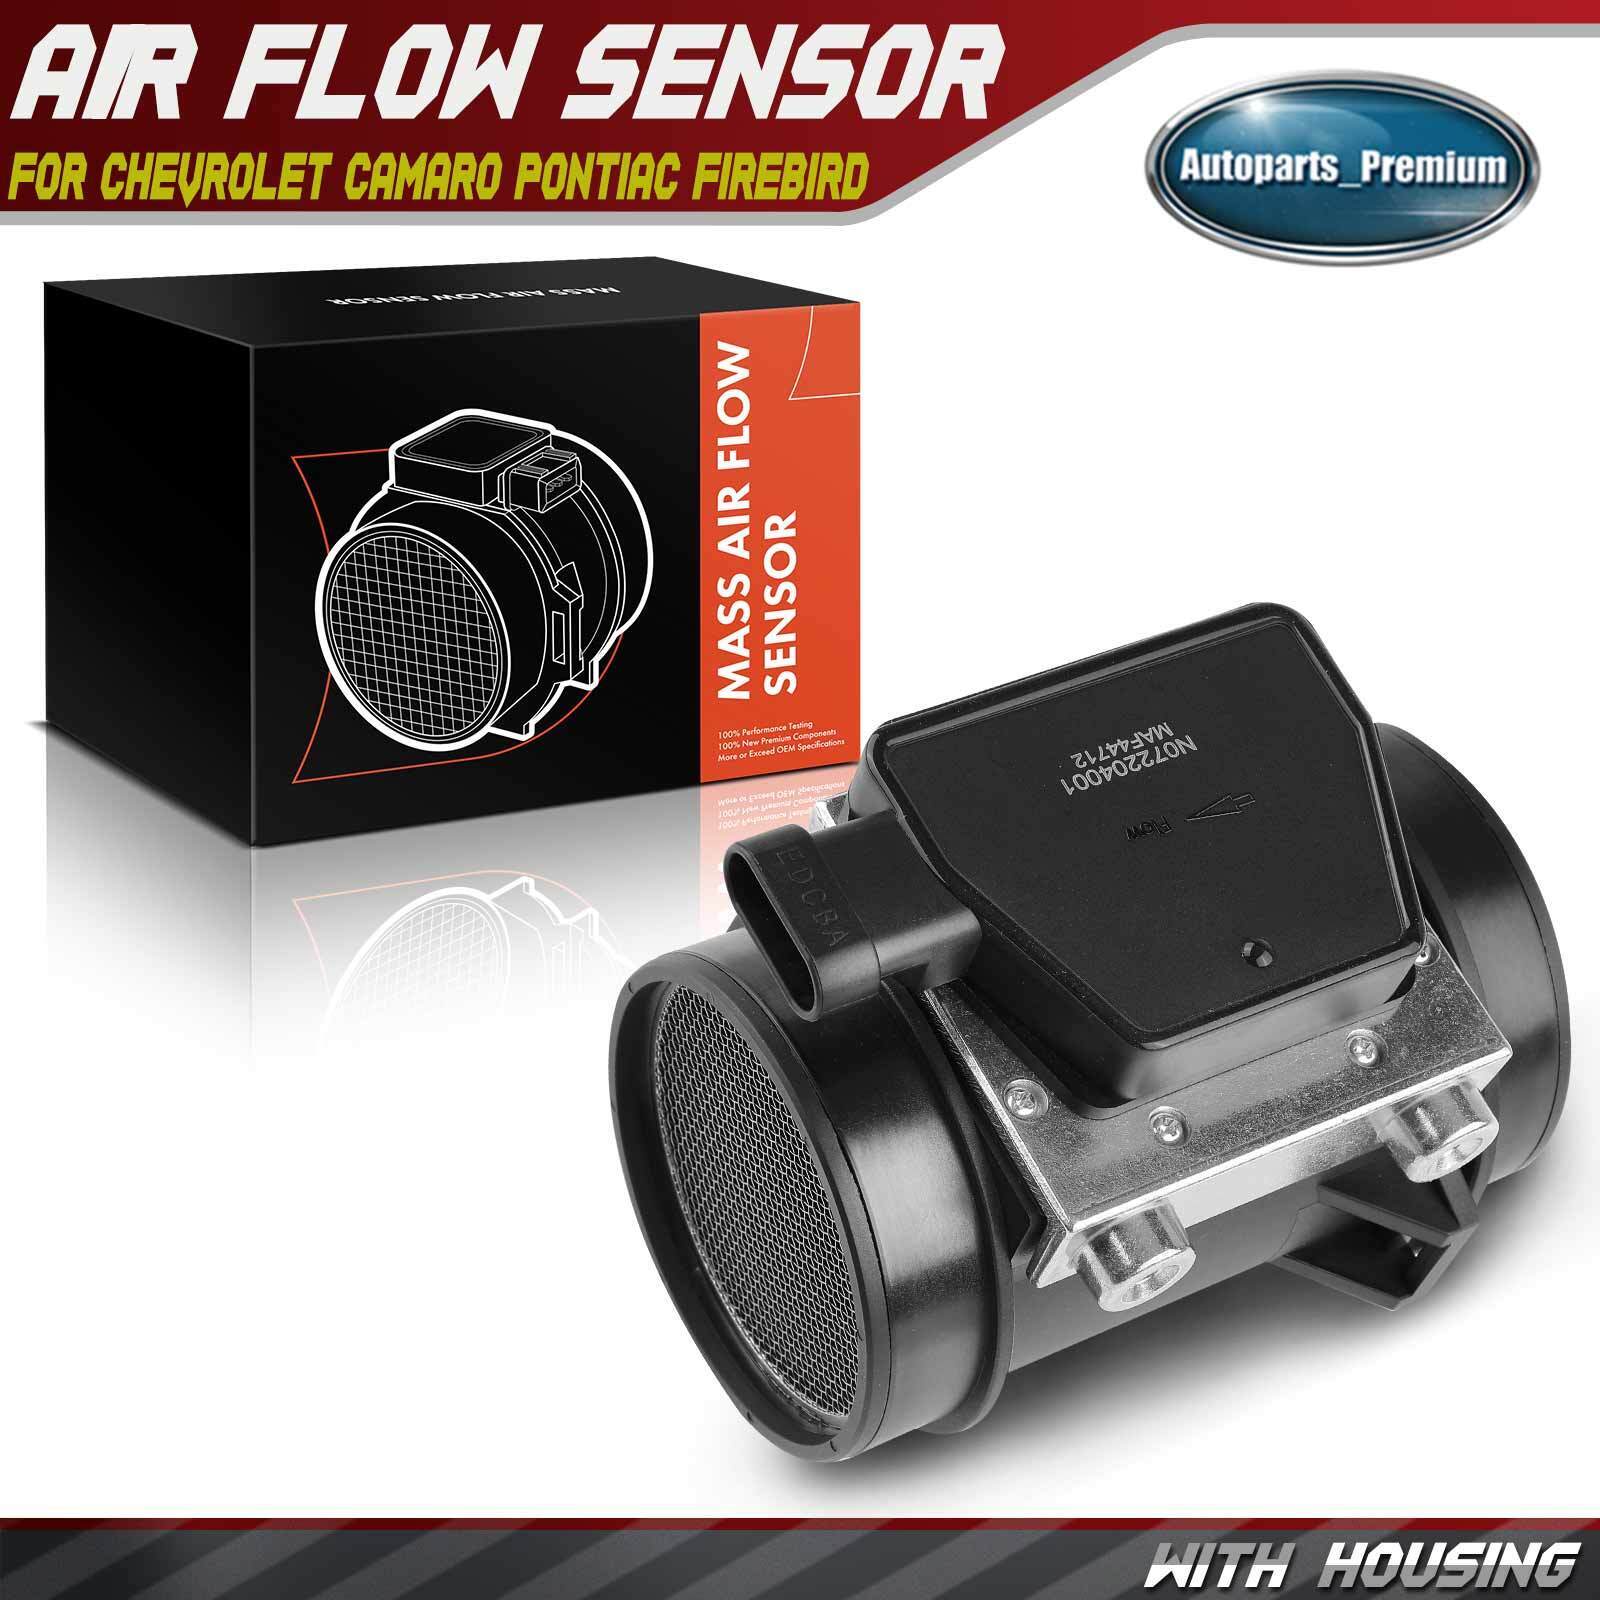 Mass Air Flow Sensor Assembly w/ Housing for Chevrolet Camaro Pontiac Firebird